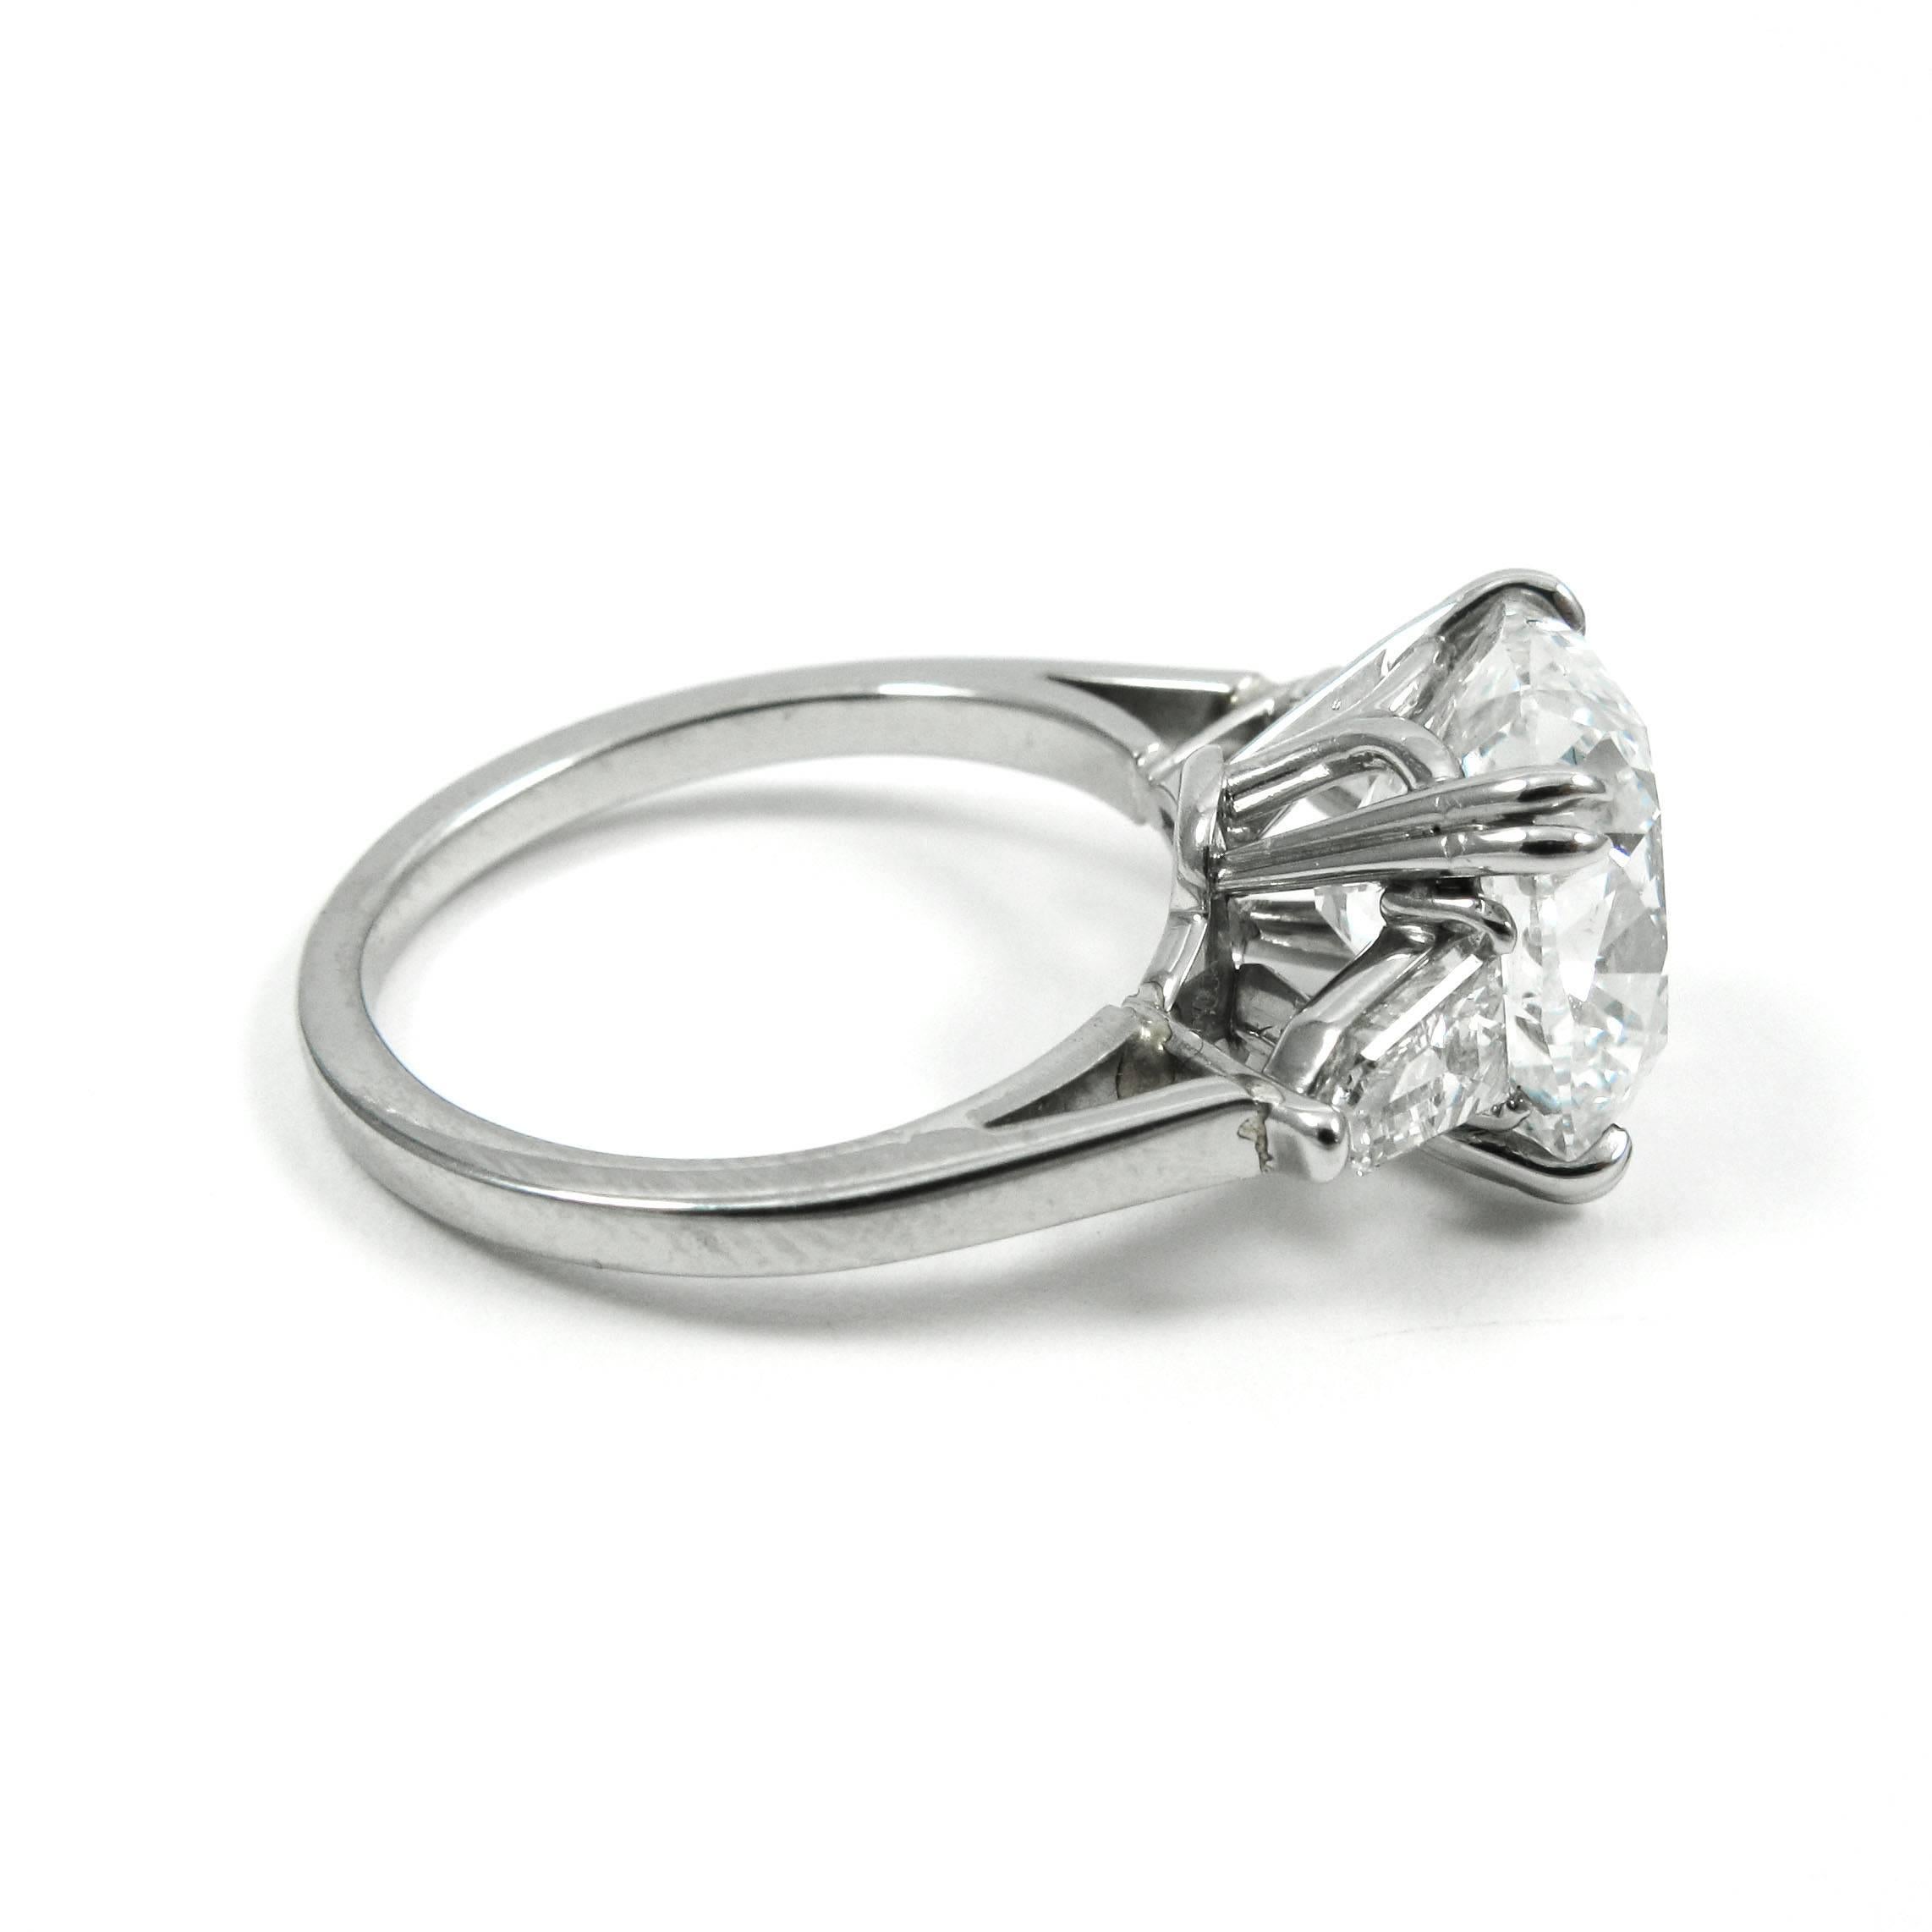 Women's or Men's GIA Certified 5.24 Carat Cushion Cut Diamond Platinum Engagement Ring